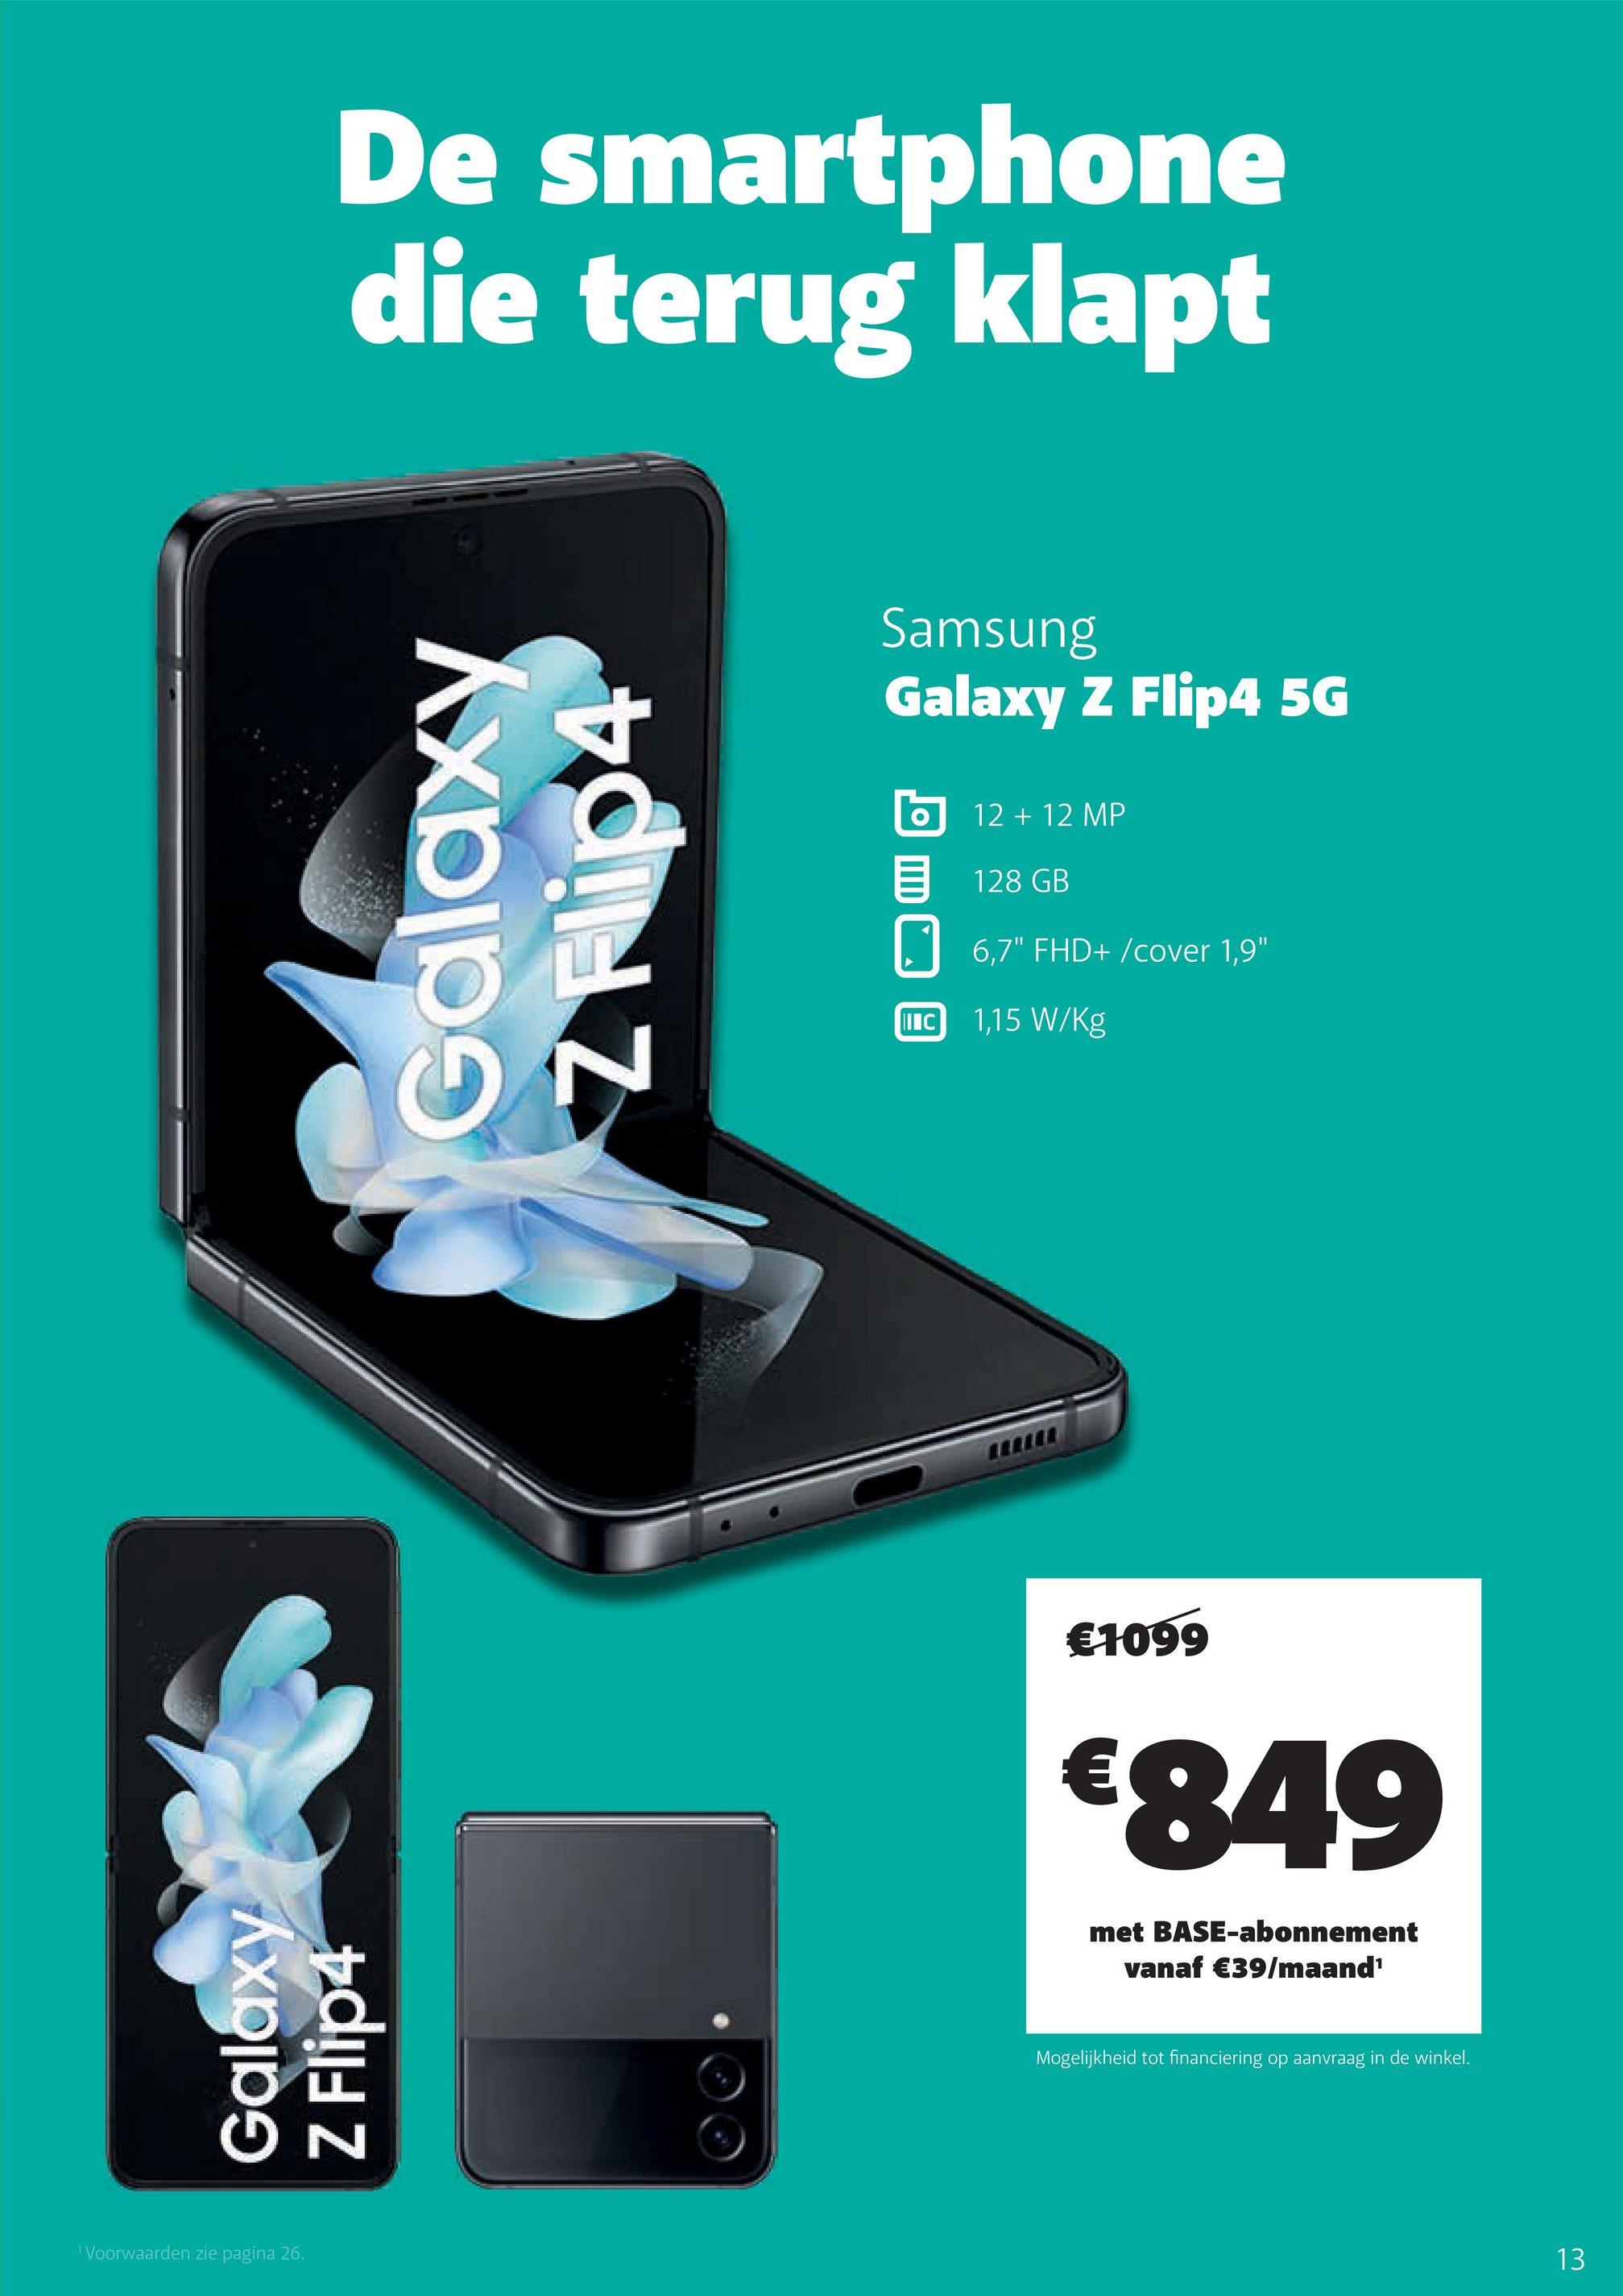 De smartphone
die terug klapt
Galaxy
Z Flip4
¹ Voorwaarden zie pagina 26.
Galaxy
N
Samsung
Galaxy Z Flip4 5G
IIIC
12 + 12 MP
128 GB
6,7" FHD+/cover 1,9"
1,15 W/kg
€1099
€849
met BASE-abonnement
vanaf €39/maand¹
Mogelijkheid tot financiering op aanvraag in de winkel.
13